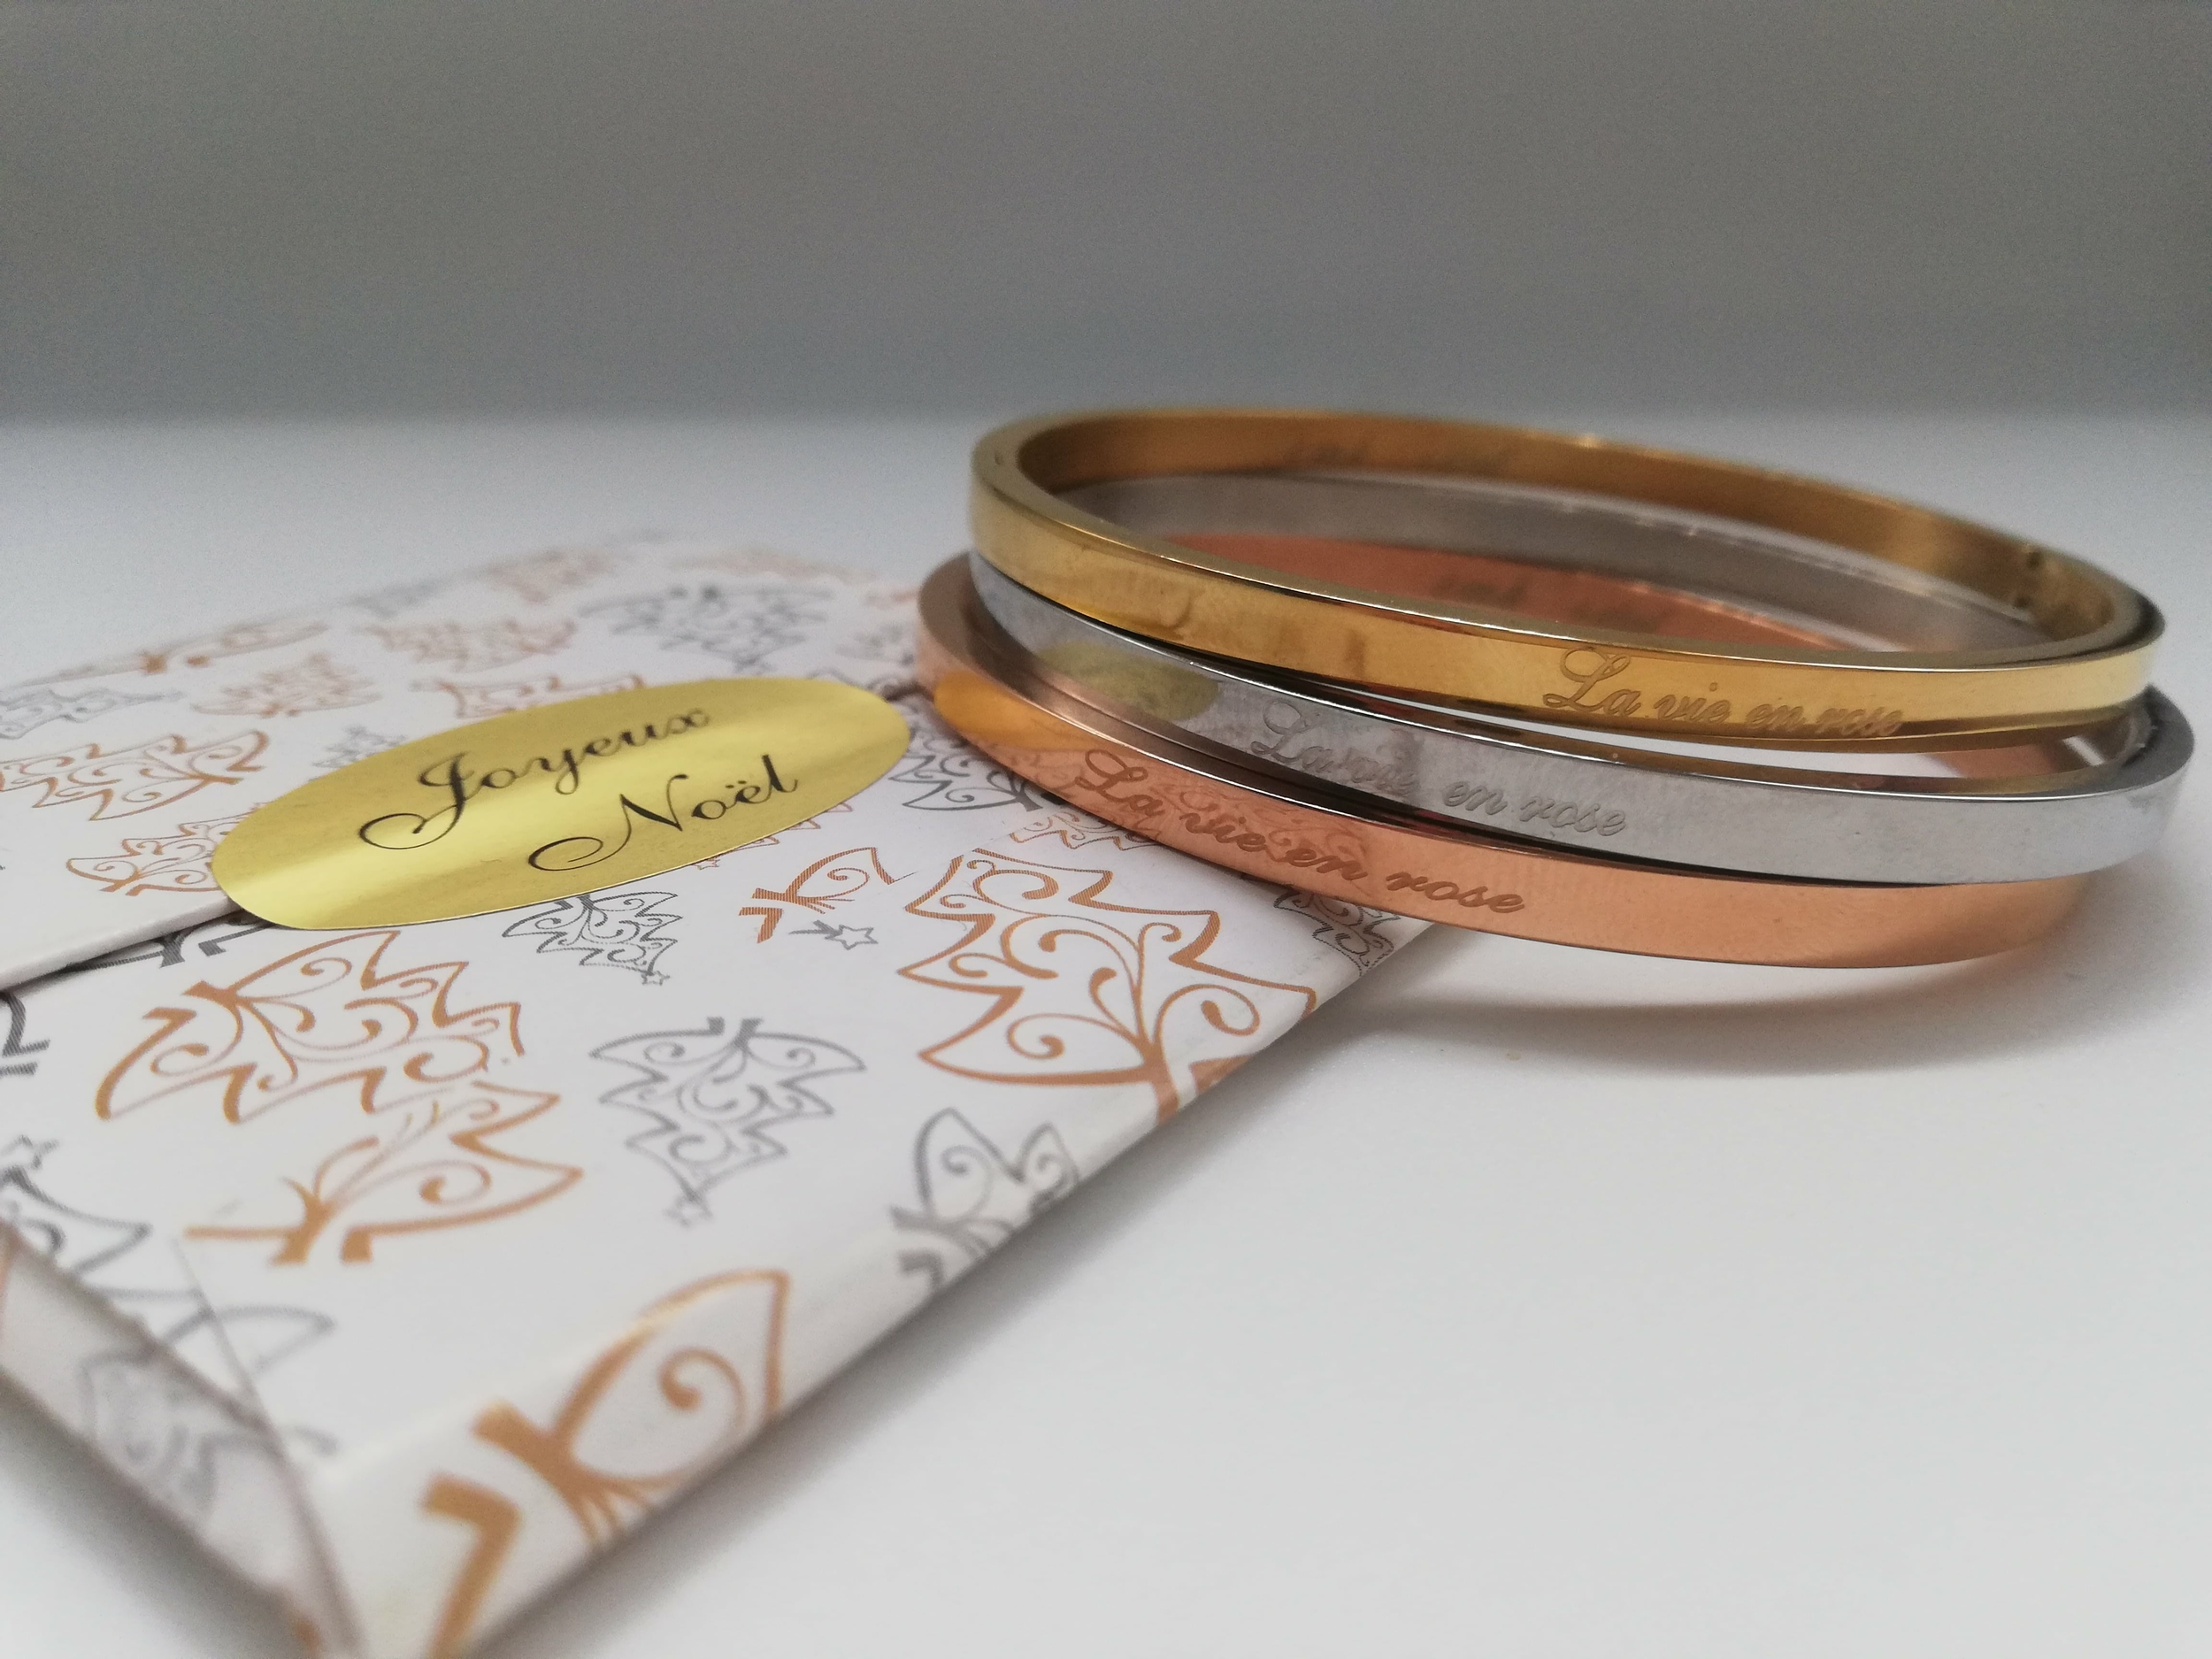 cadeau de noel tendance composé dun bracelet gravé La vie en rose avec une carte joyeux noel et citation